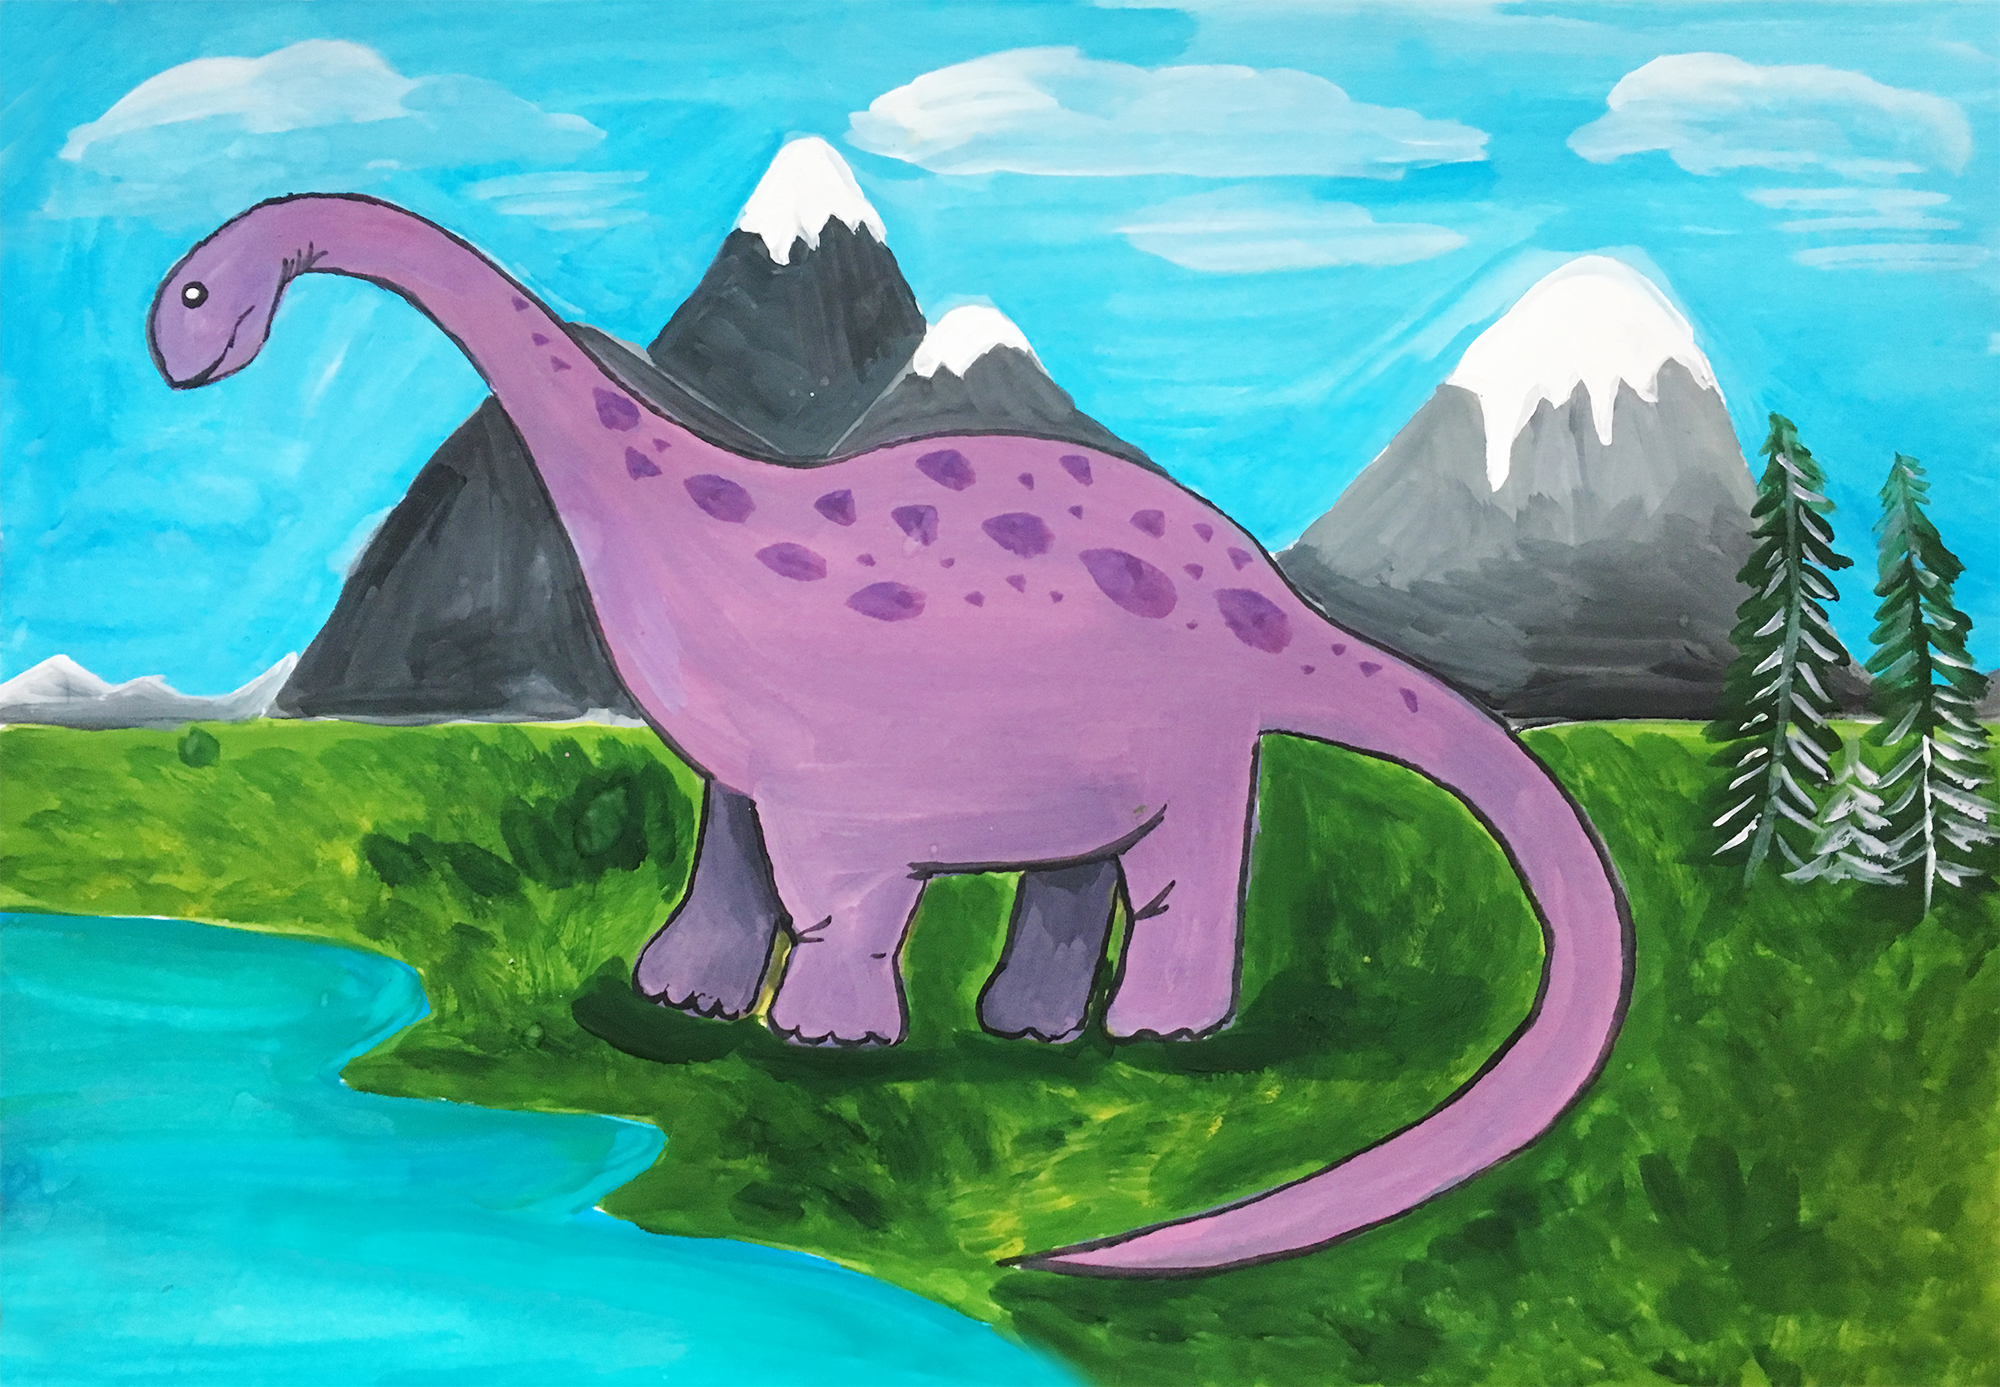 Как нарисовать динозавра поэтапно гуашью (Мастер-класс для детей)